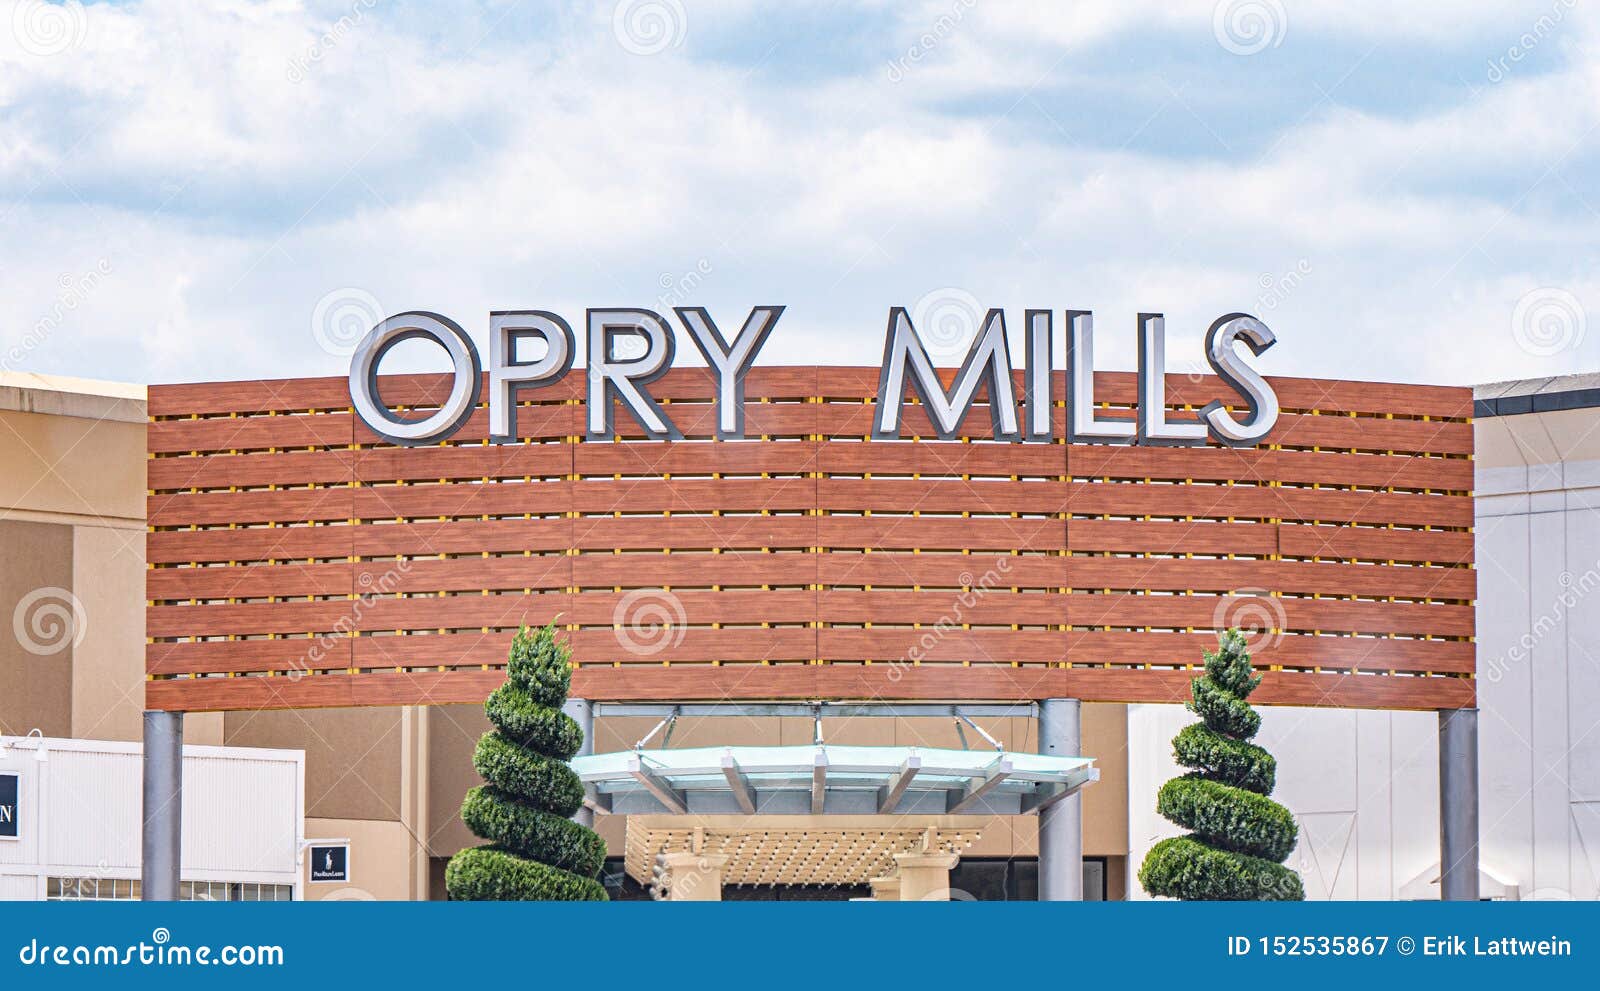 Opry Mills  Visit Nashville TN